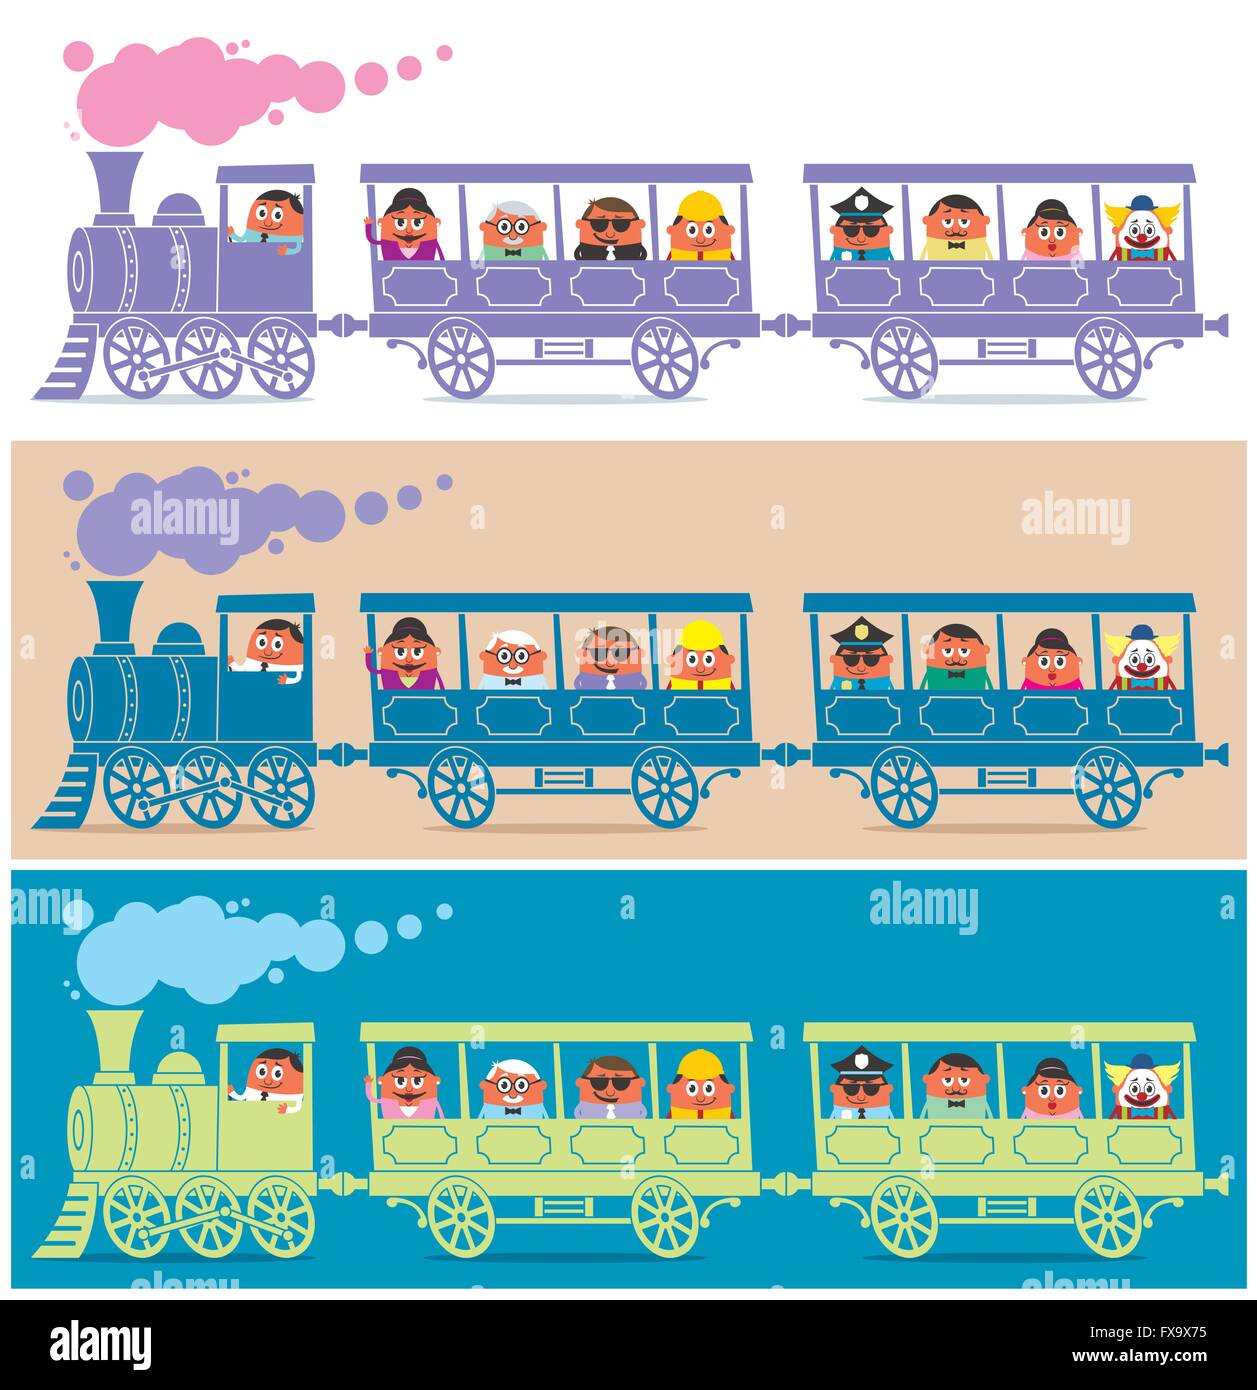 Train à vapeur plein de personnages de dessins animés. Il est en 3 versions de couleur. Illustration de Vecteur